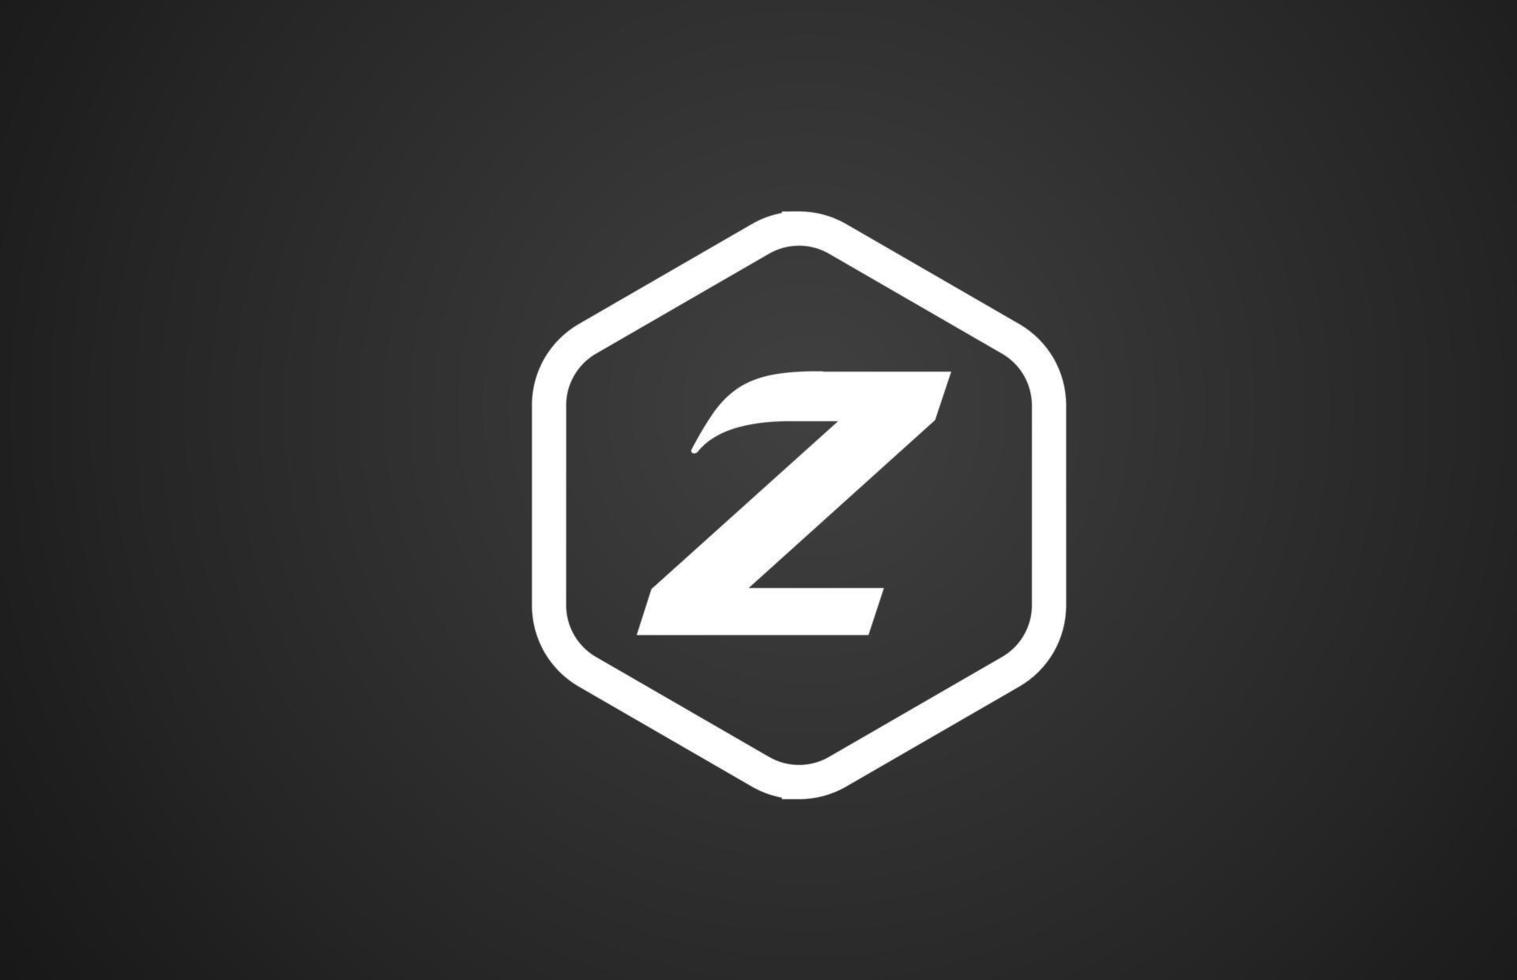 Projeto do ícone do logotipo de letra do alfabeto z preto e branco com losango para negócios e empresa vetor